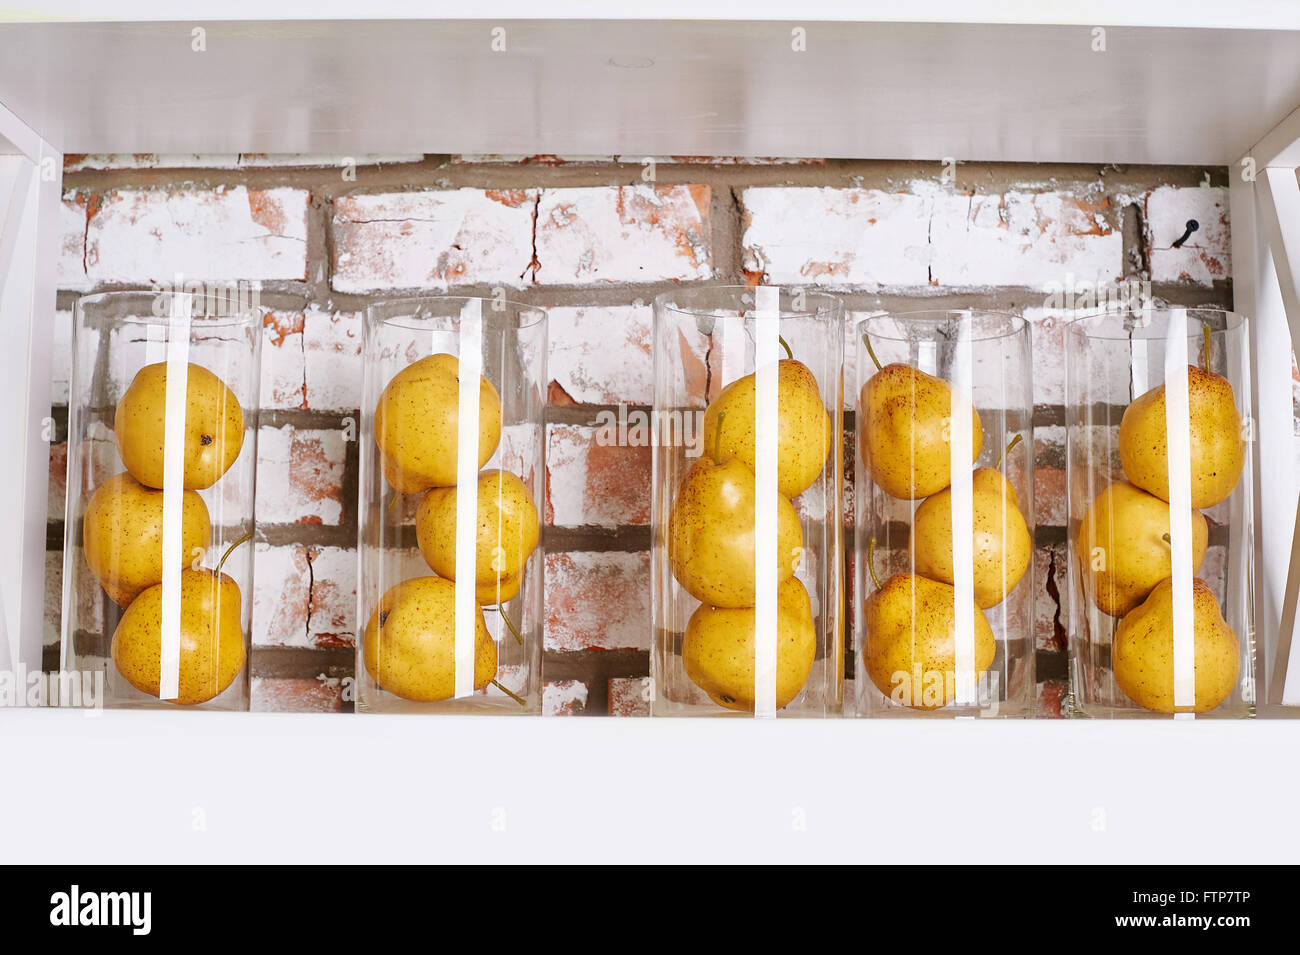 Las peras en amarillo pequeño de vidrio en la estantería del concepto de la vida todavía Foto de stock